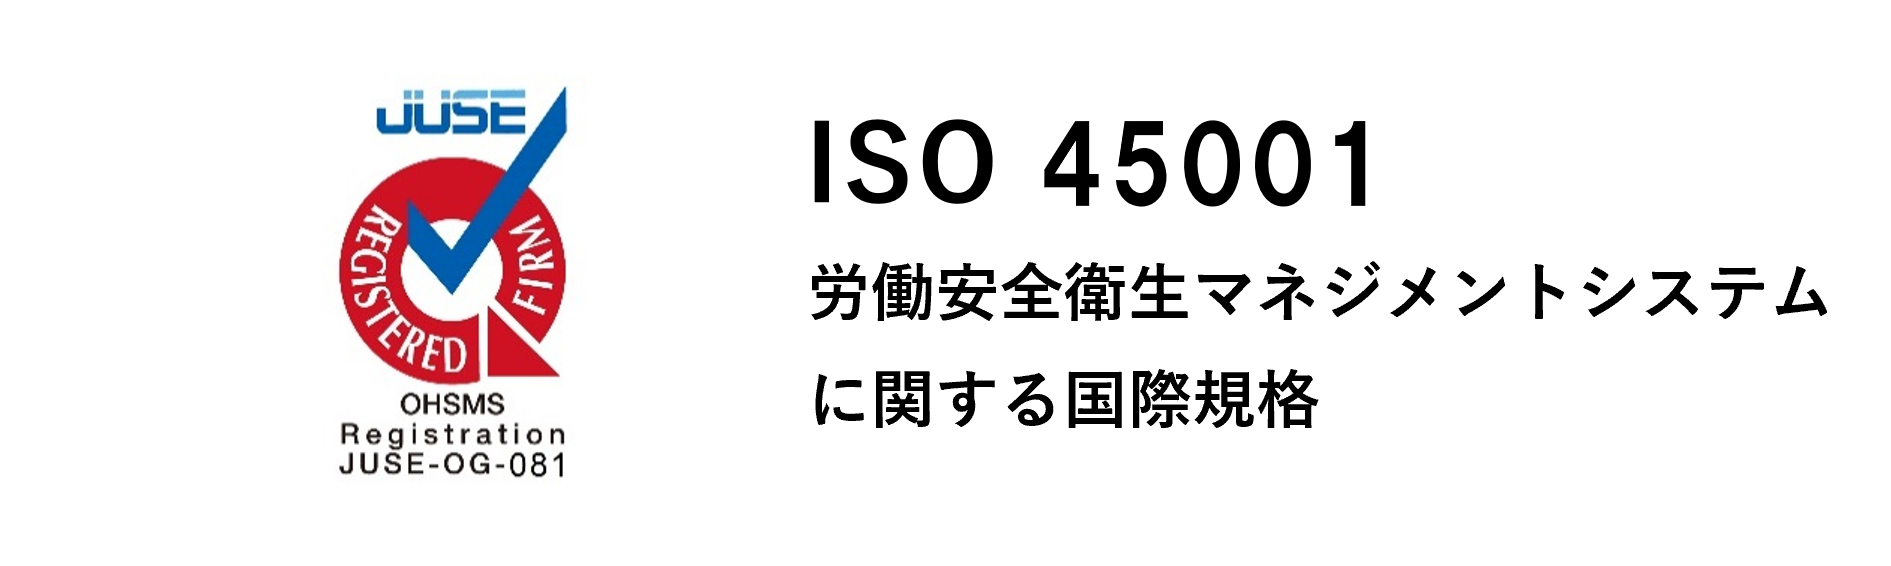 ISO 45001 労働安全衛生マネジメントシステムに関する国際規格